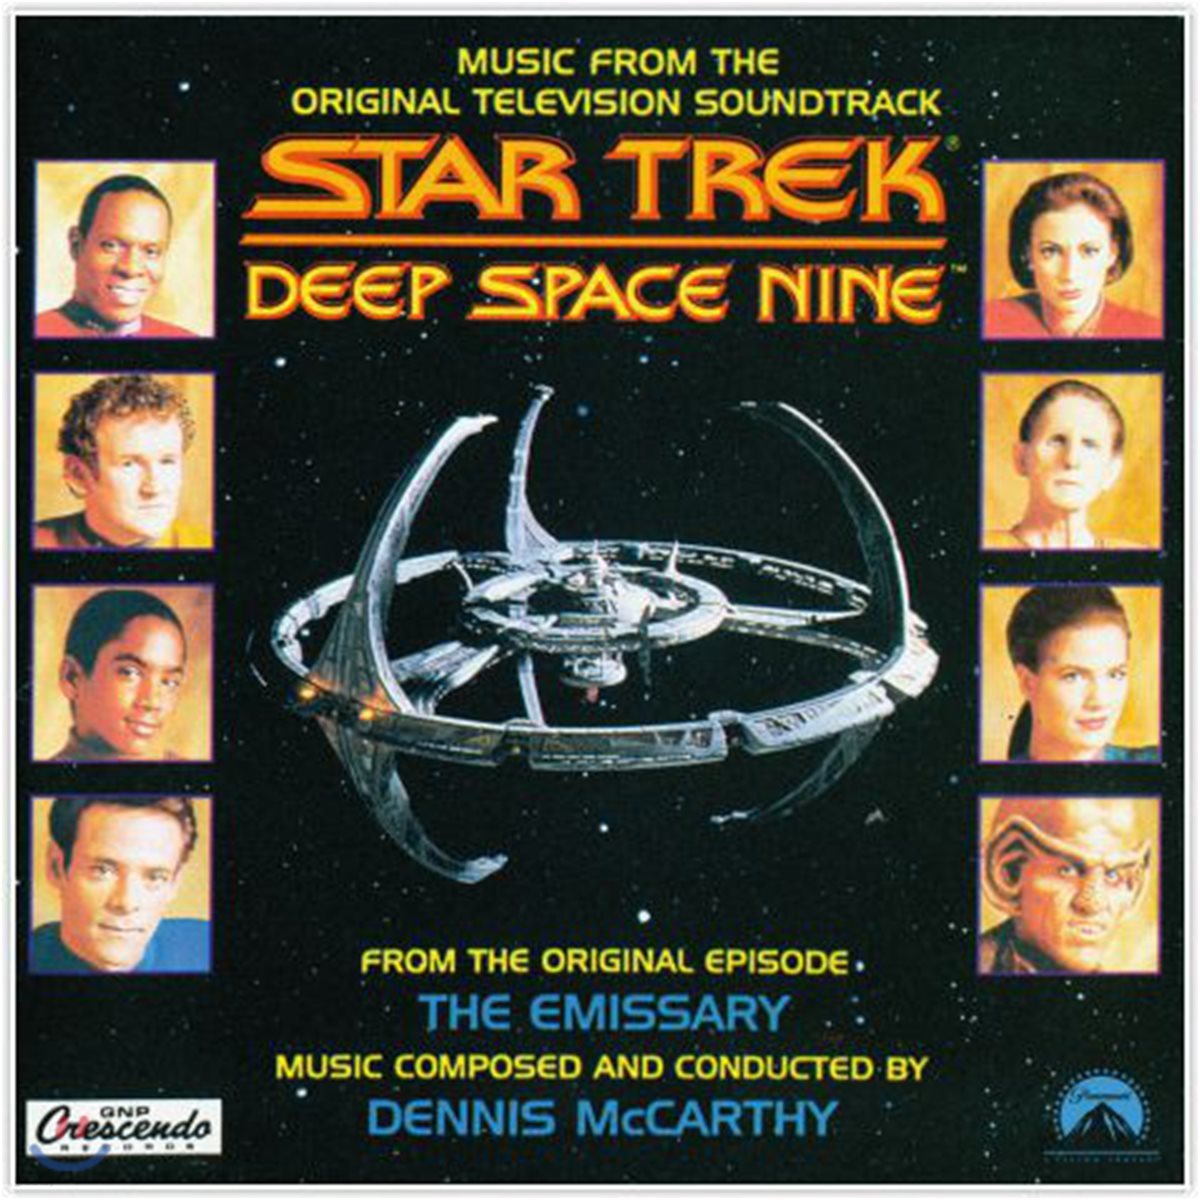 스타트렉: 딥 스페이스 나인 드라마음악 (Star Trek: Deep Space Nine OST by Dennis McCarthy 데니스 맥카시) [LP]